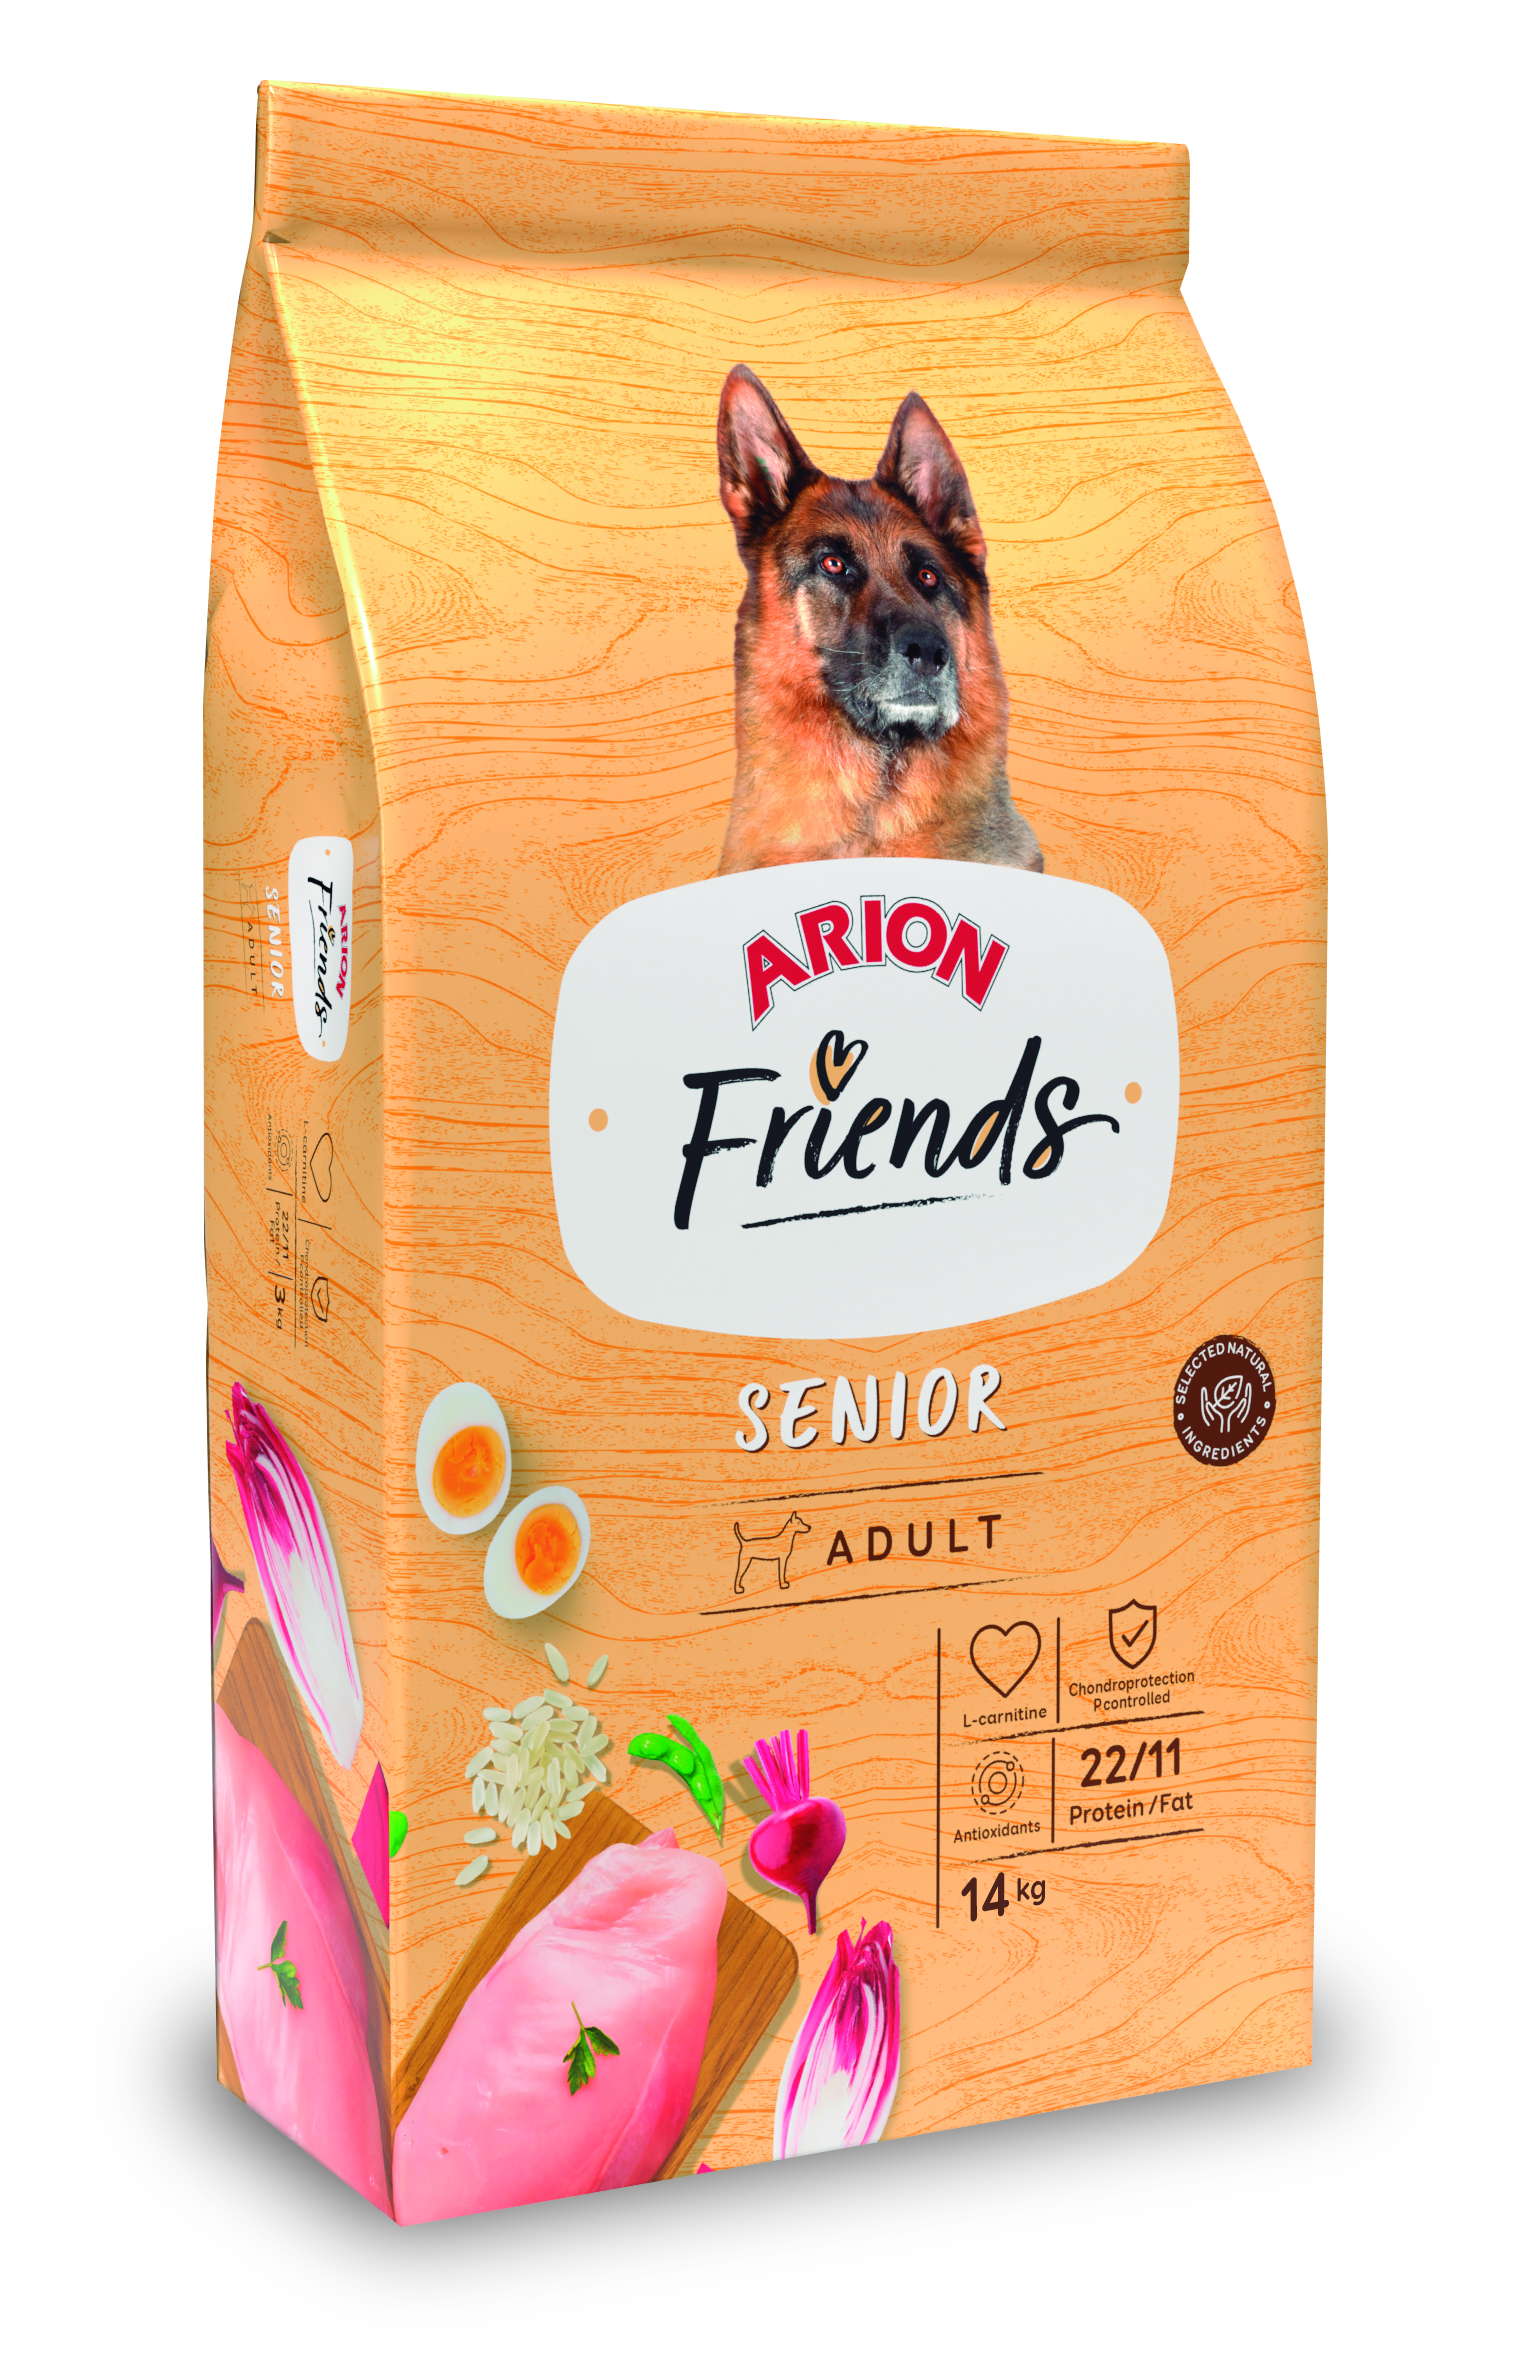 Arion Friends Adult “Senior” – 14Kg